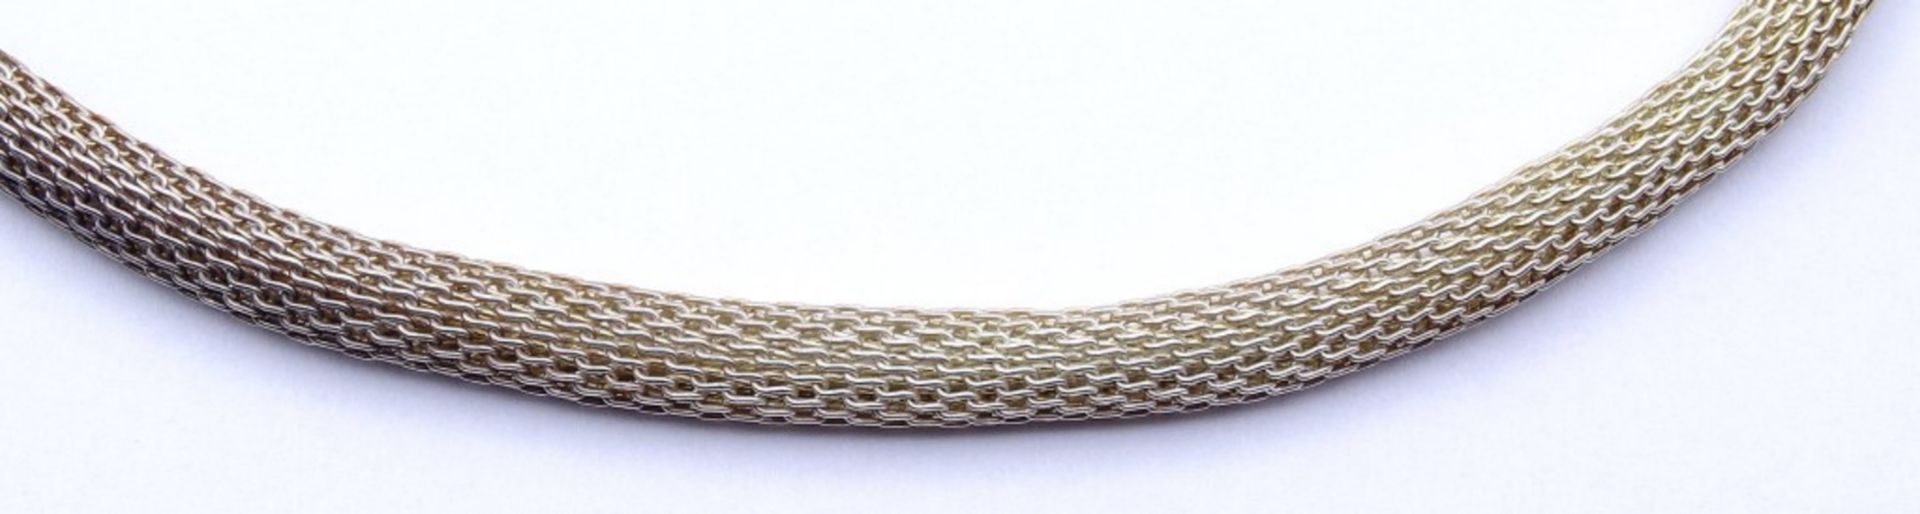 Silber Halskette 925/000 mit Karabiner Verschluss,L. 45cm, 18,9g., - Image 3 of 3